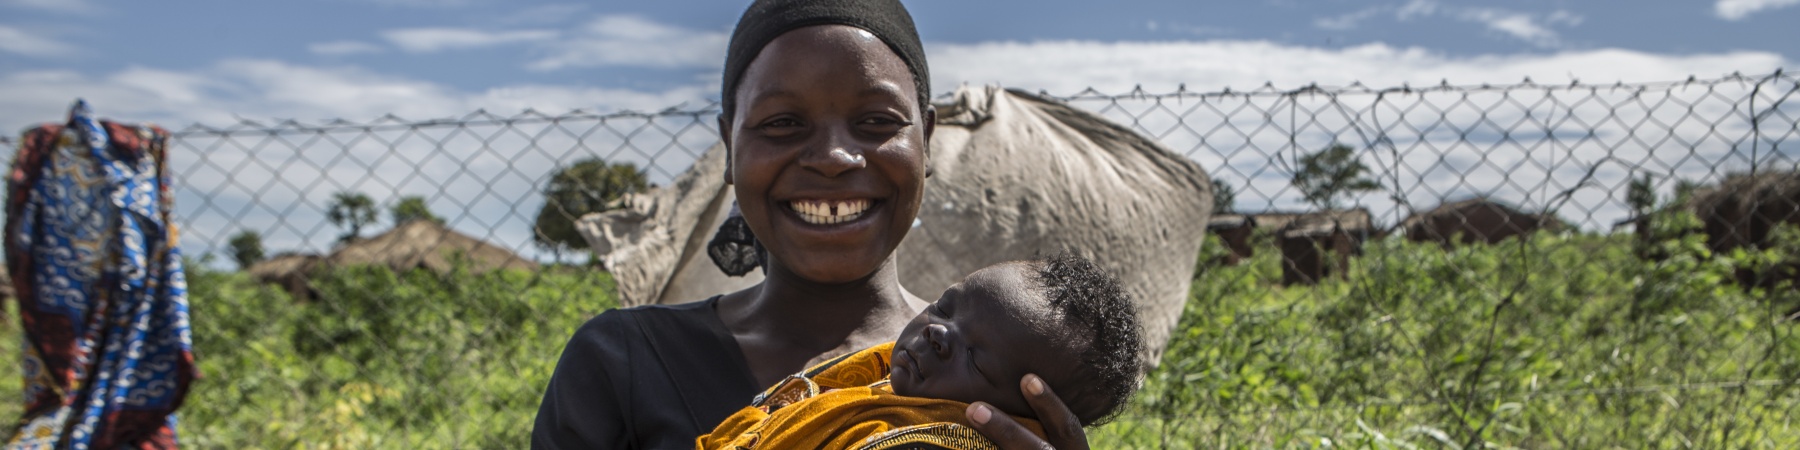 mamma sorridente con bambino in braccio in un campo